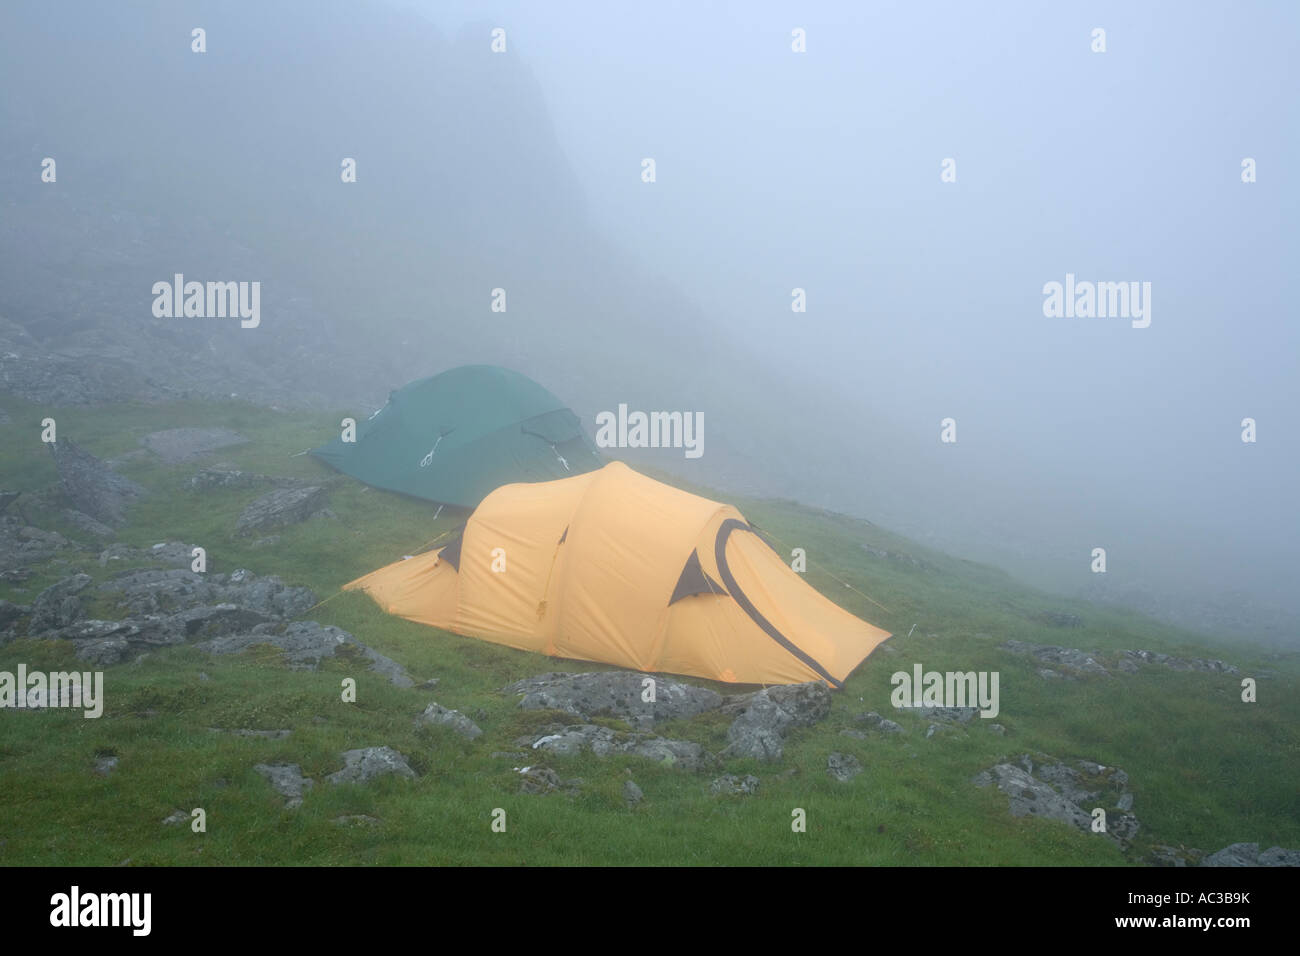 Tentes dans la brume sur un flanc de montagne du Parc National de Snowdonia au Pays de Galles Banque D'Images